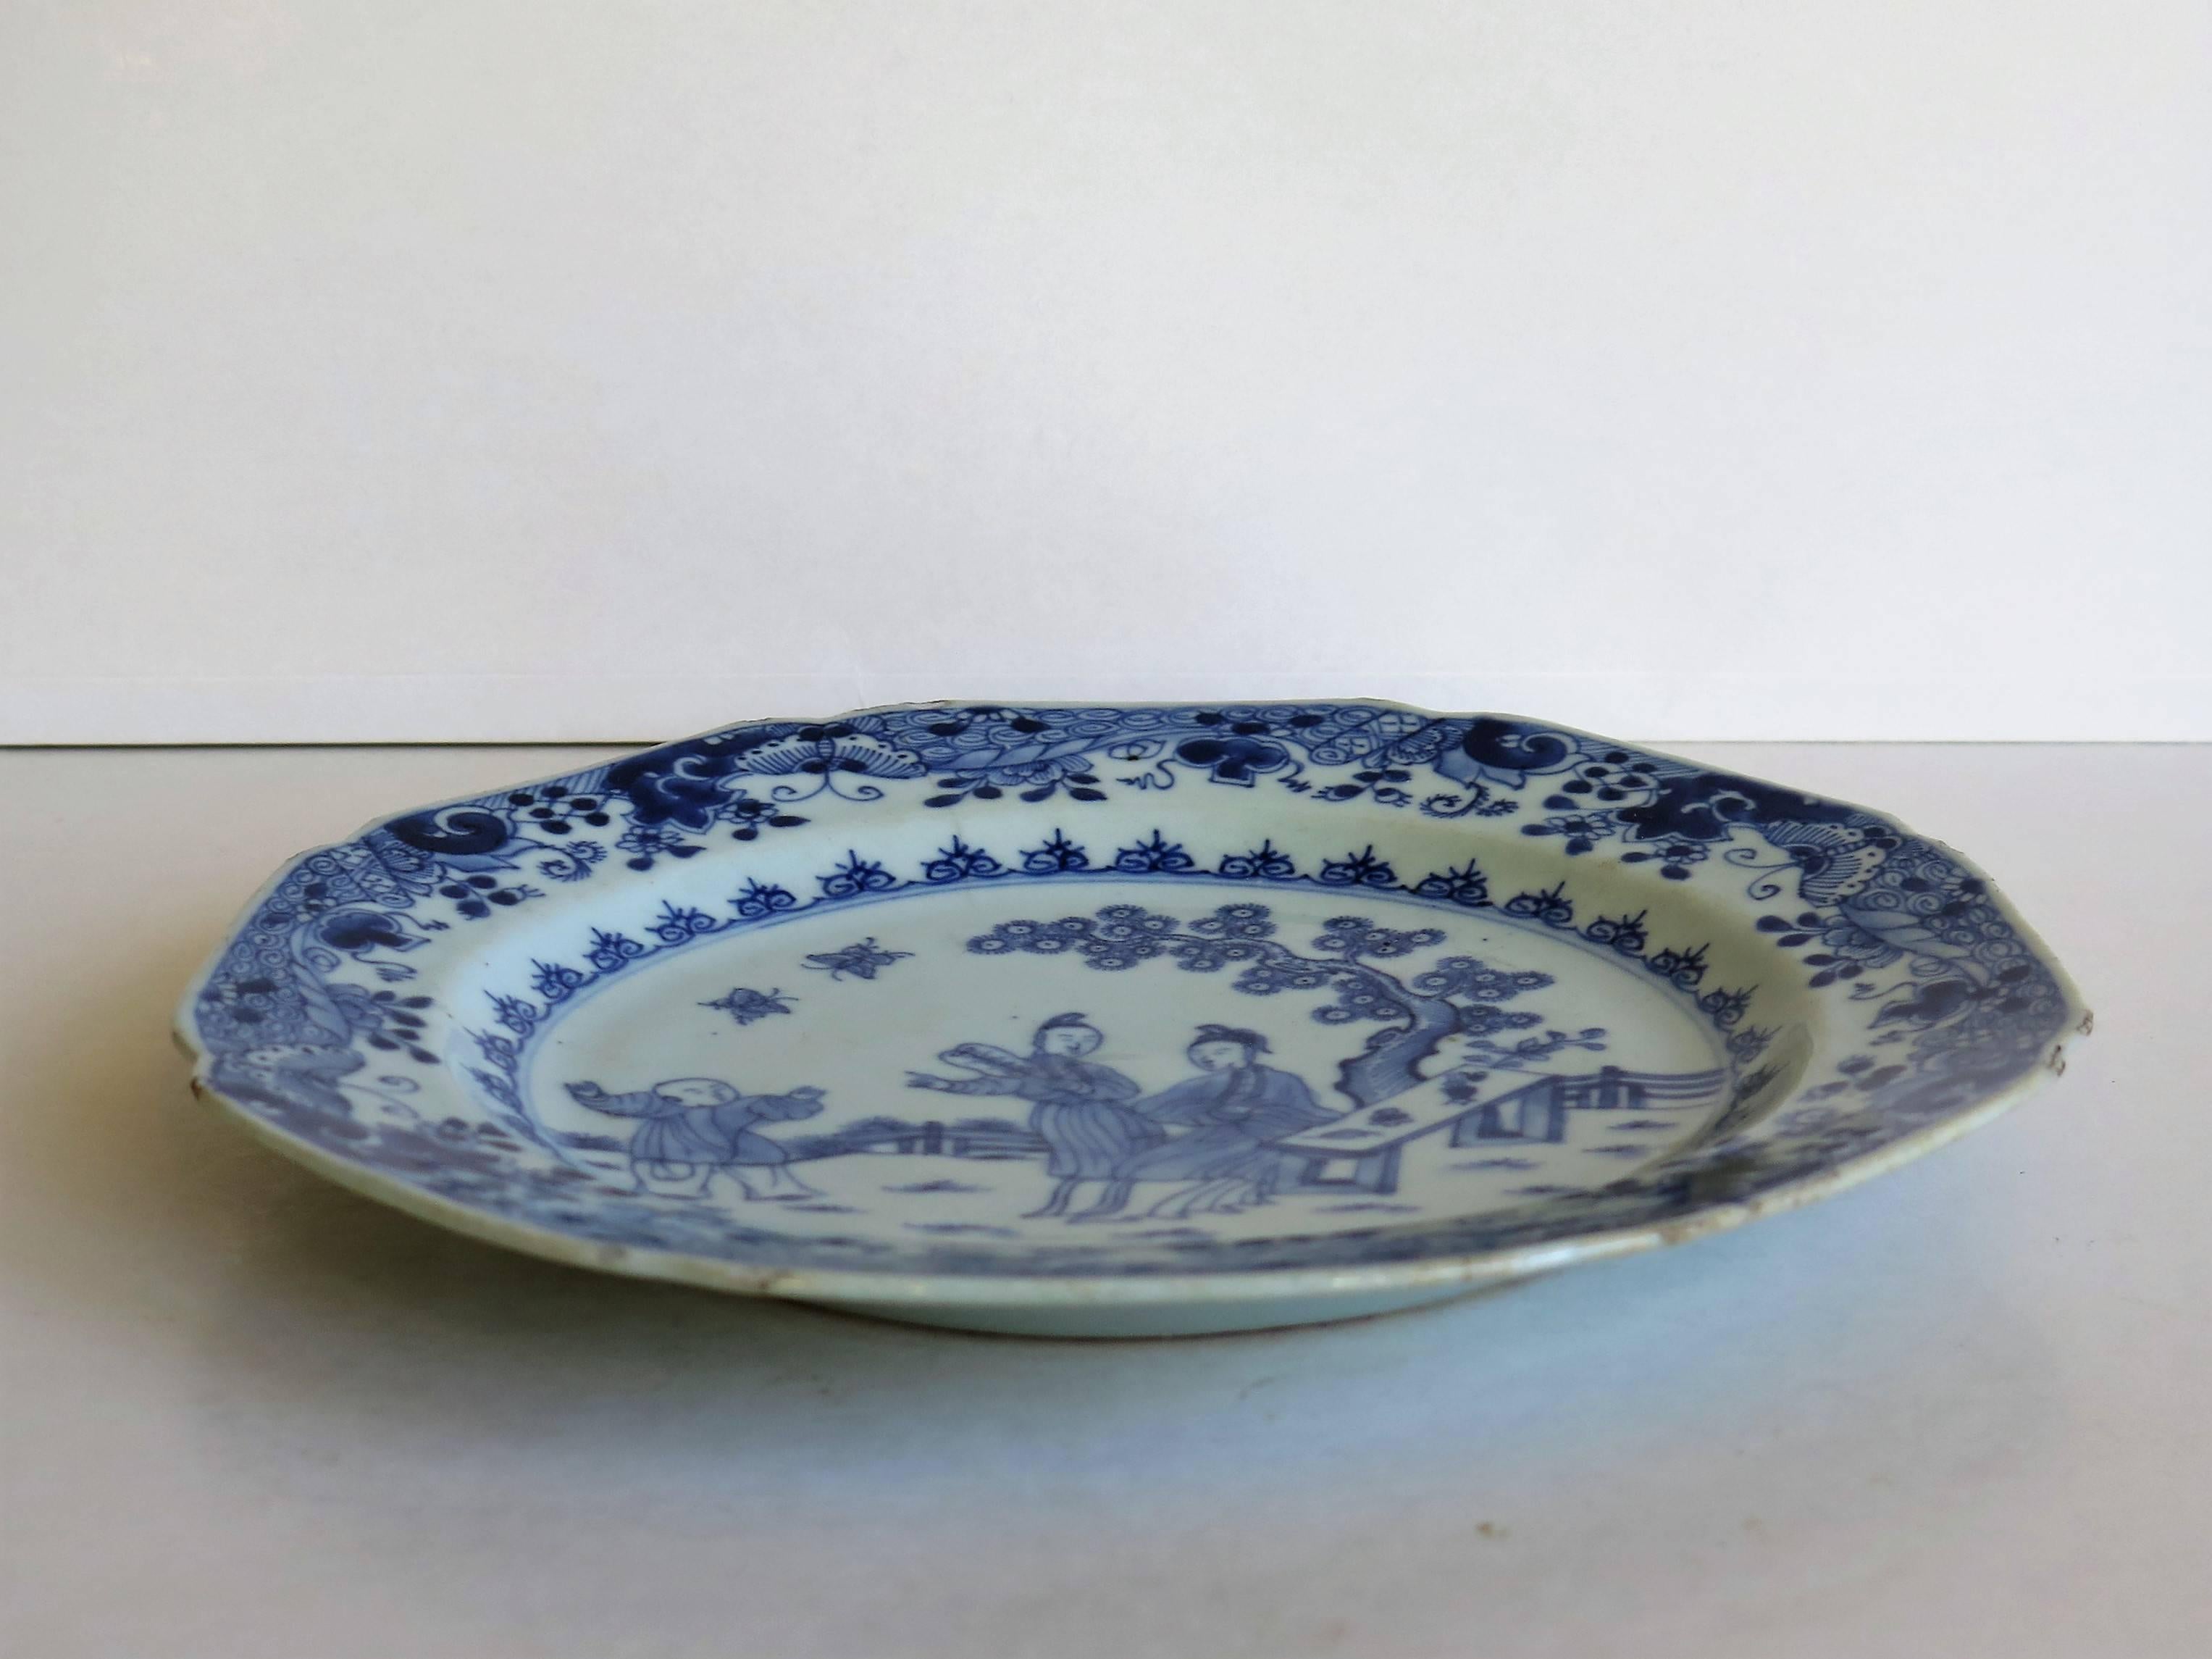 qianlong porcelain plates